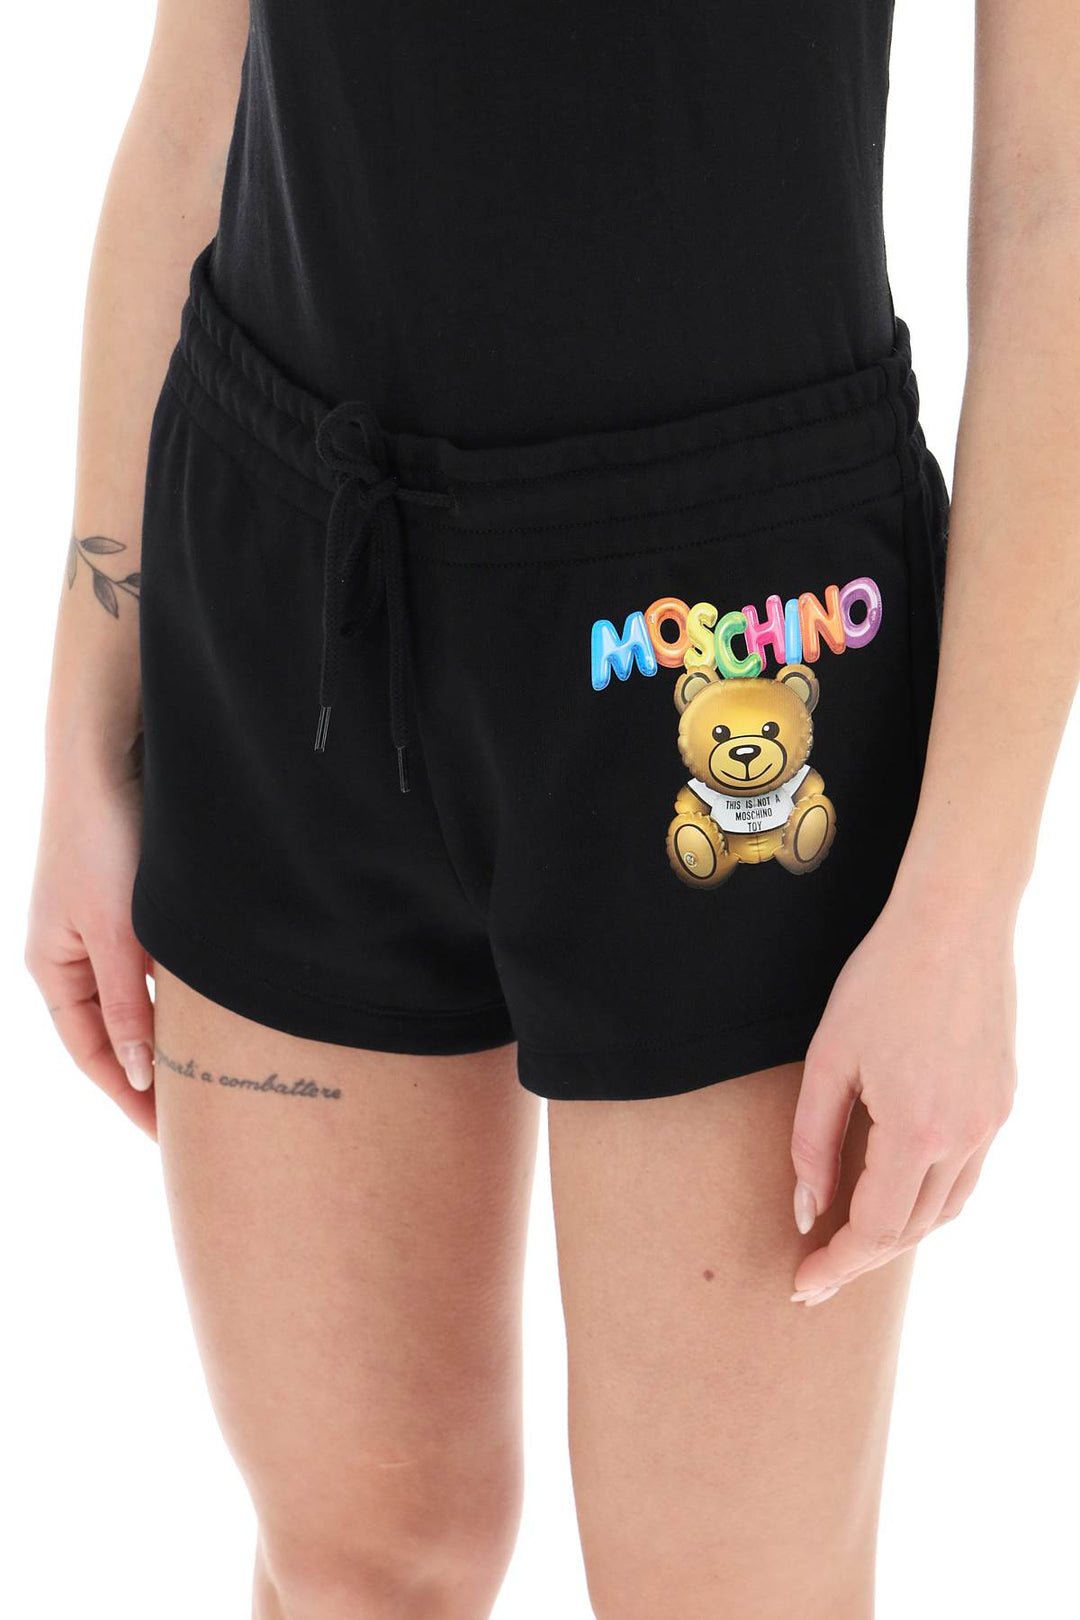 Moschino Logo Printed Shorts   Nero